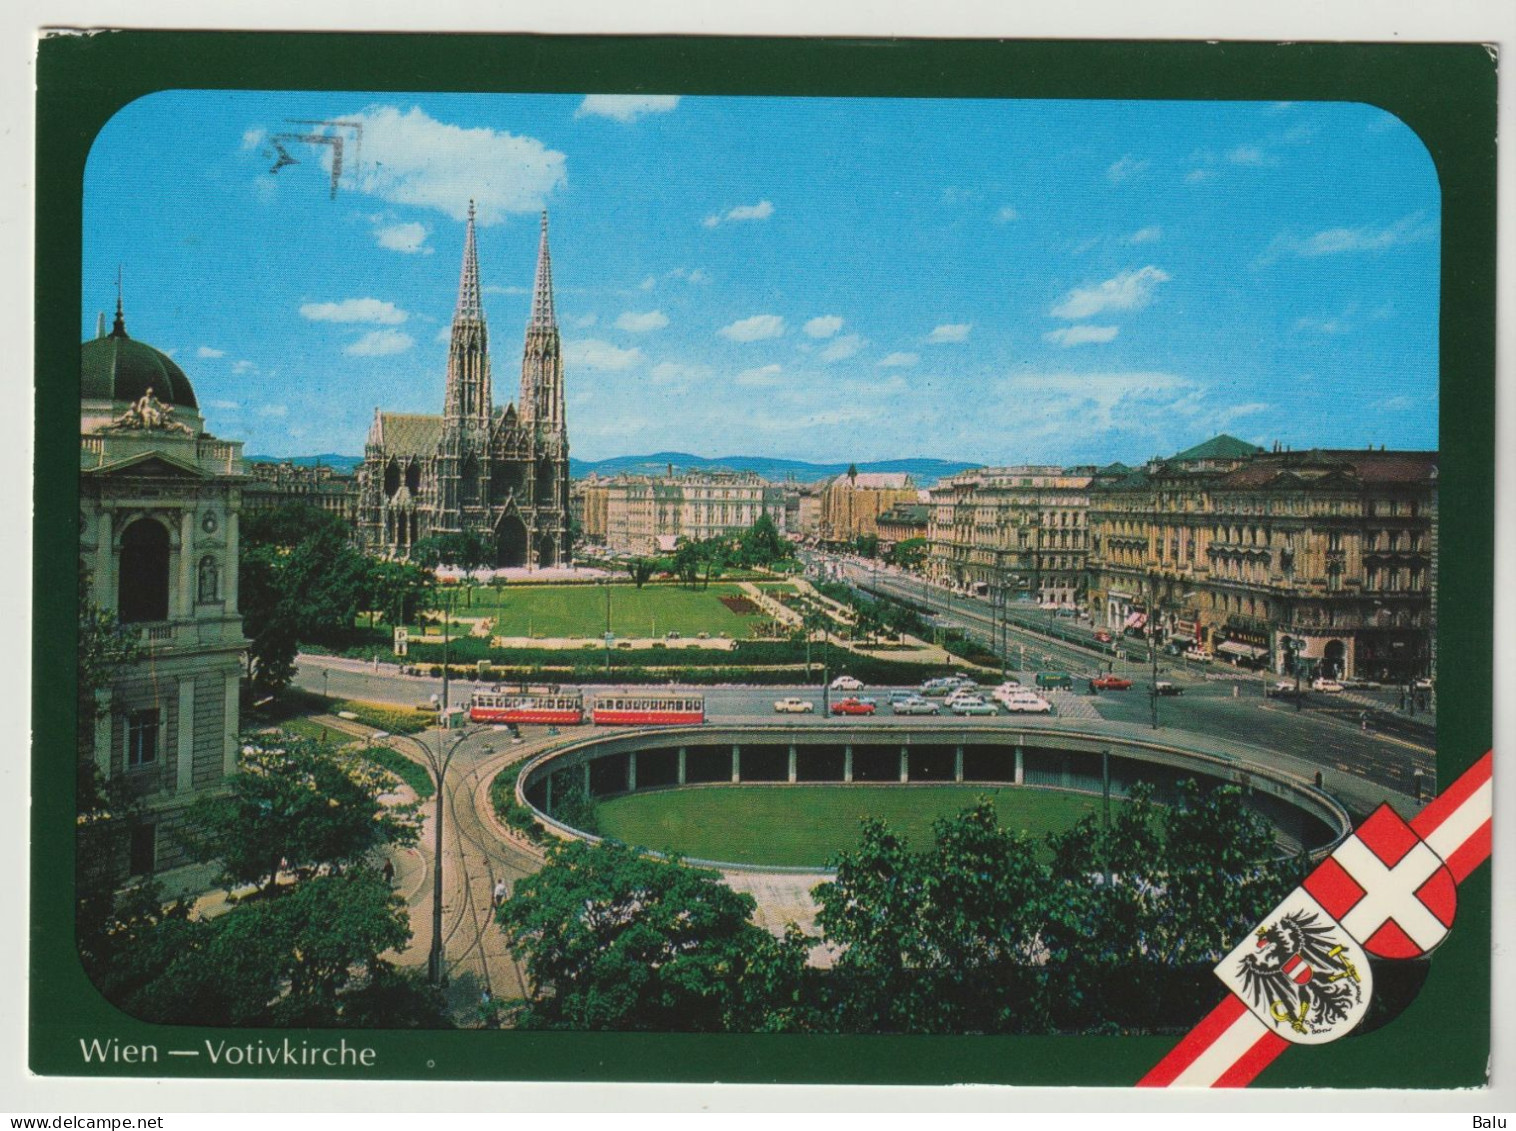 AK Wien 9 - Votivkirche, 1984 Postalisch Gelaufen, Siehe 3 Scans - Wien Mitte